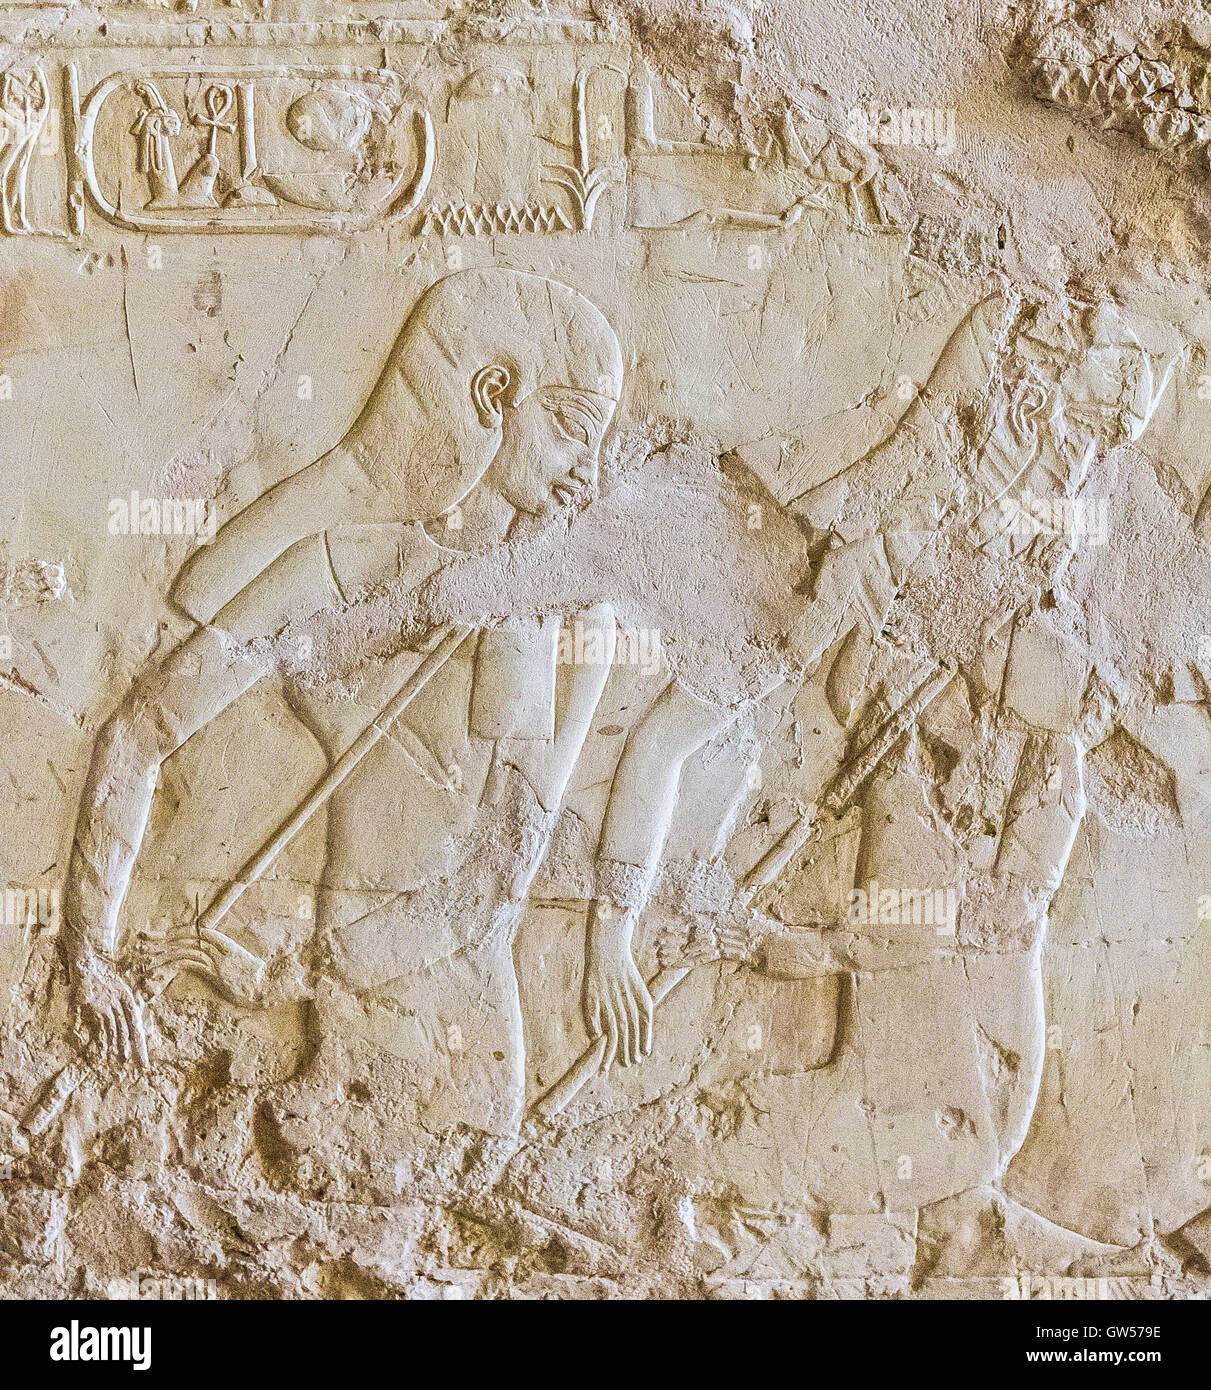 UNESCO World Heritage, Thèbes en Egypte, Assassif (partie de la vallée des Nobles), tombe de Kheruef. Musiciennes. Banque D'Images